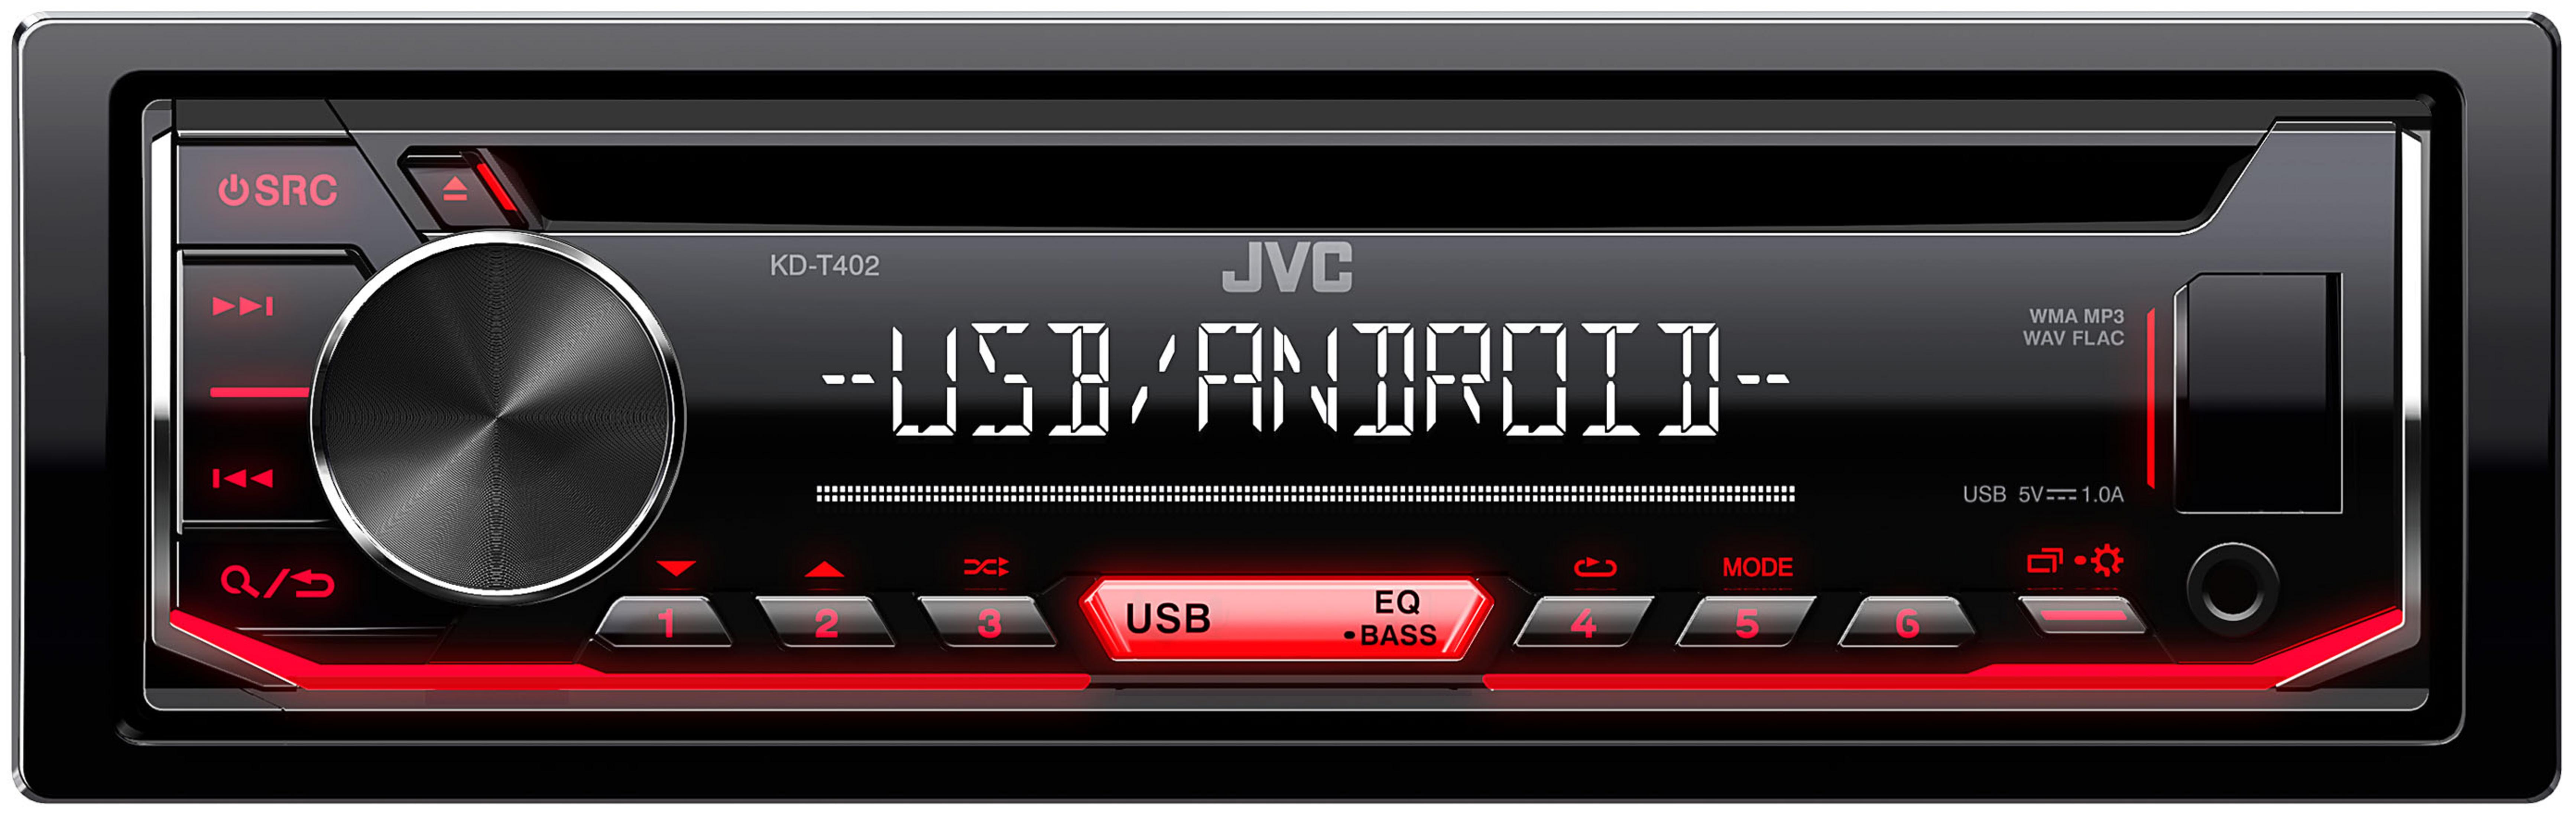 JVC KDT 50 Autoradio 402 1 Watt DIN